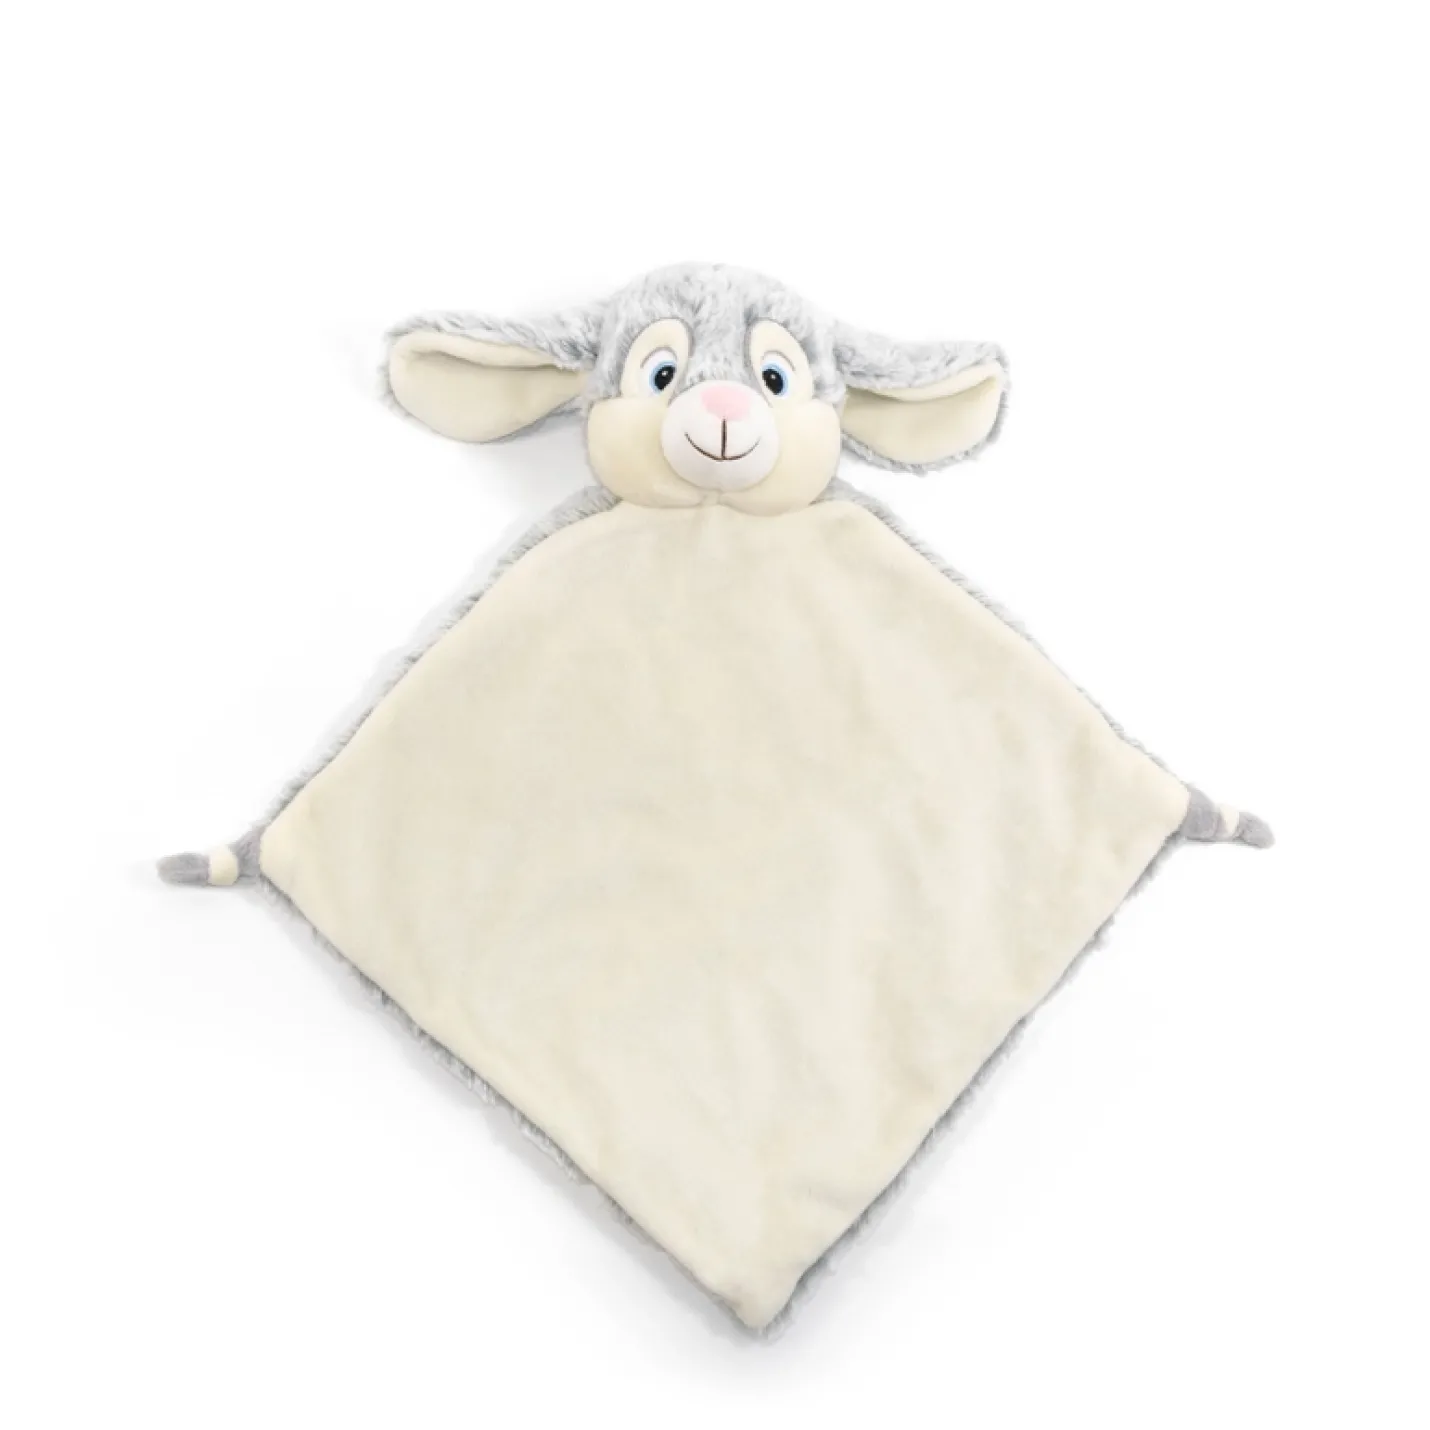 Knuffeldierdoekje Konijn is grijs vierkant voorkant wit punten een knoop en een wit/grijs konijnhoofd met grote oren